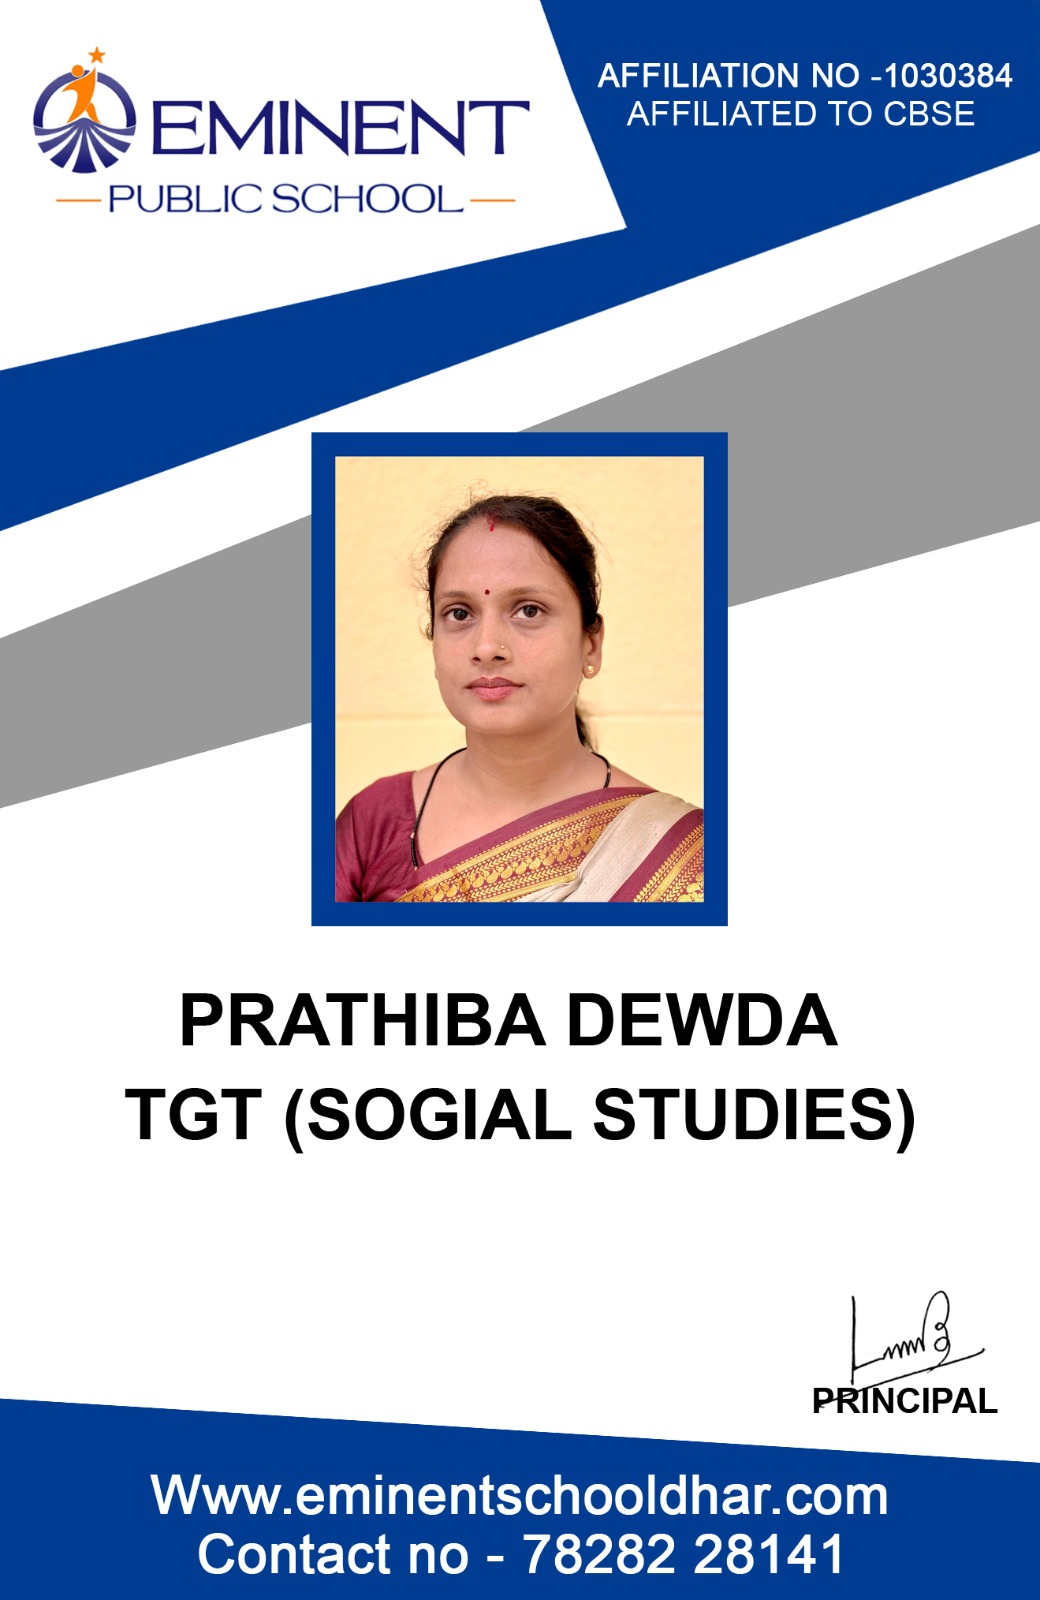 Mrs. Prathiba Dewda